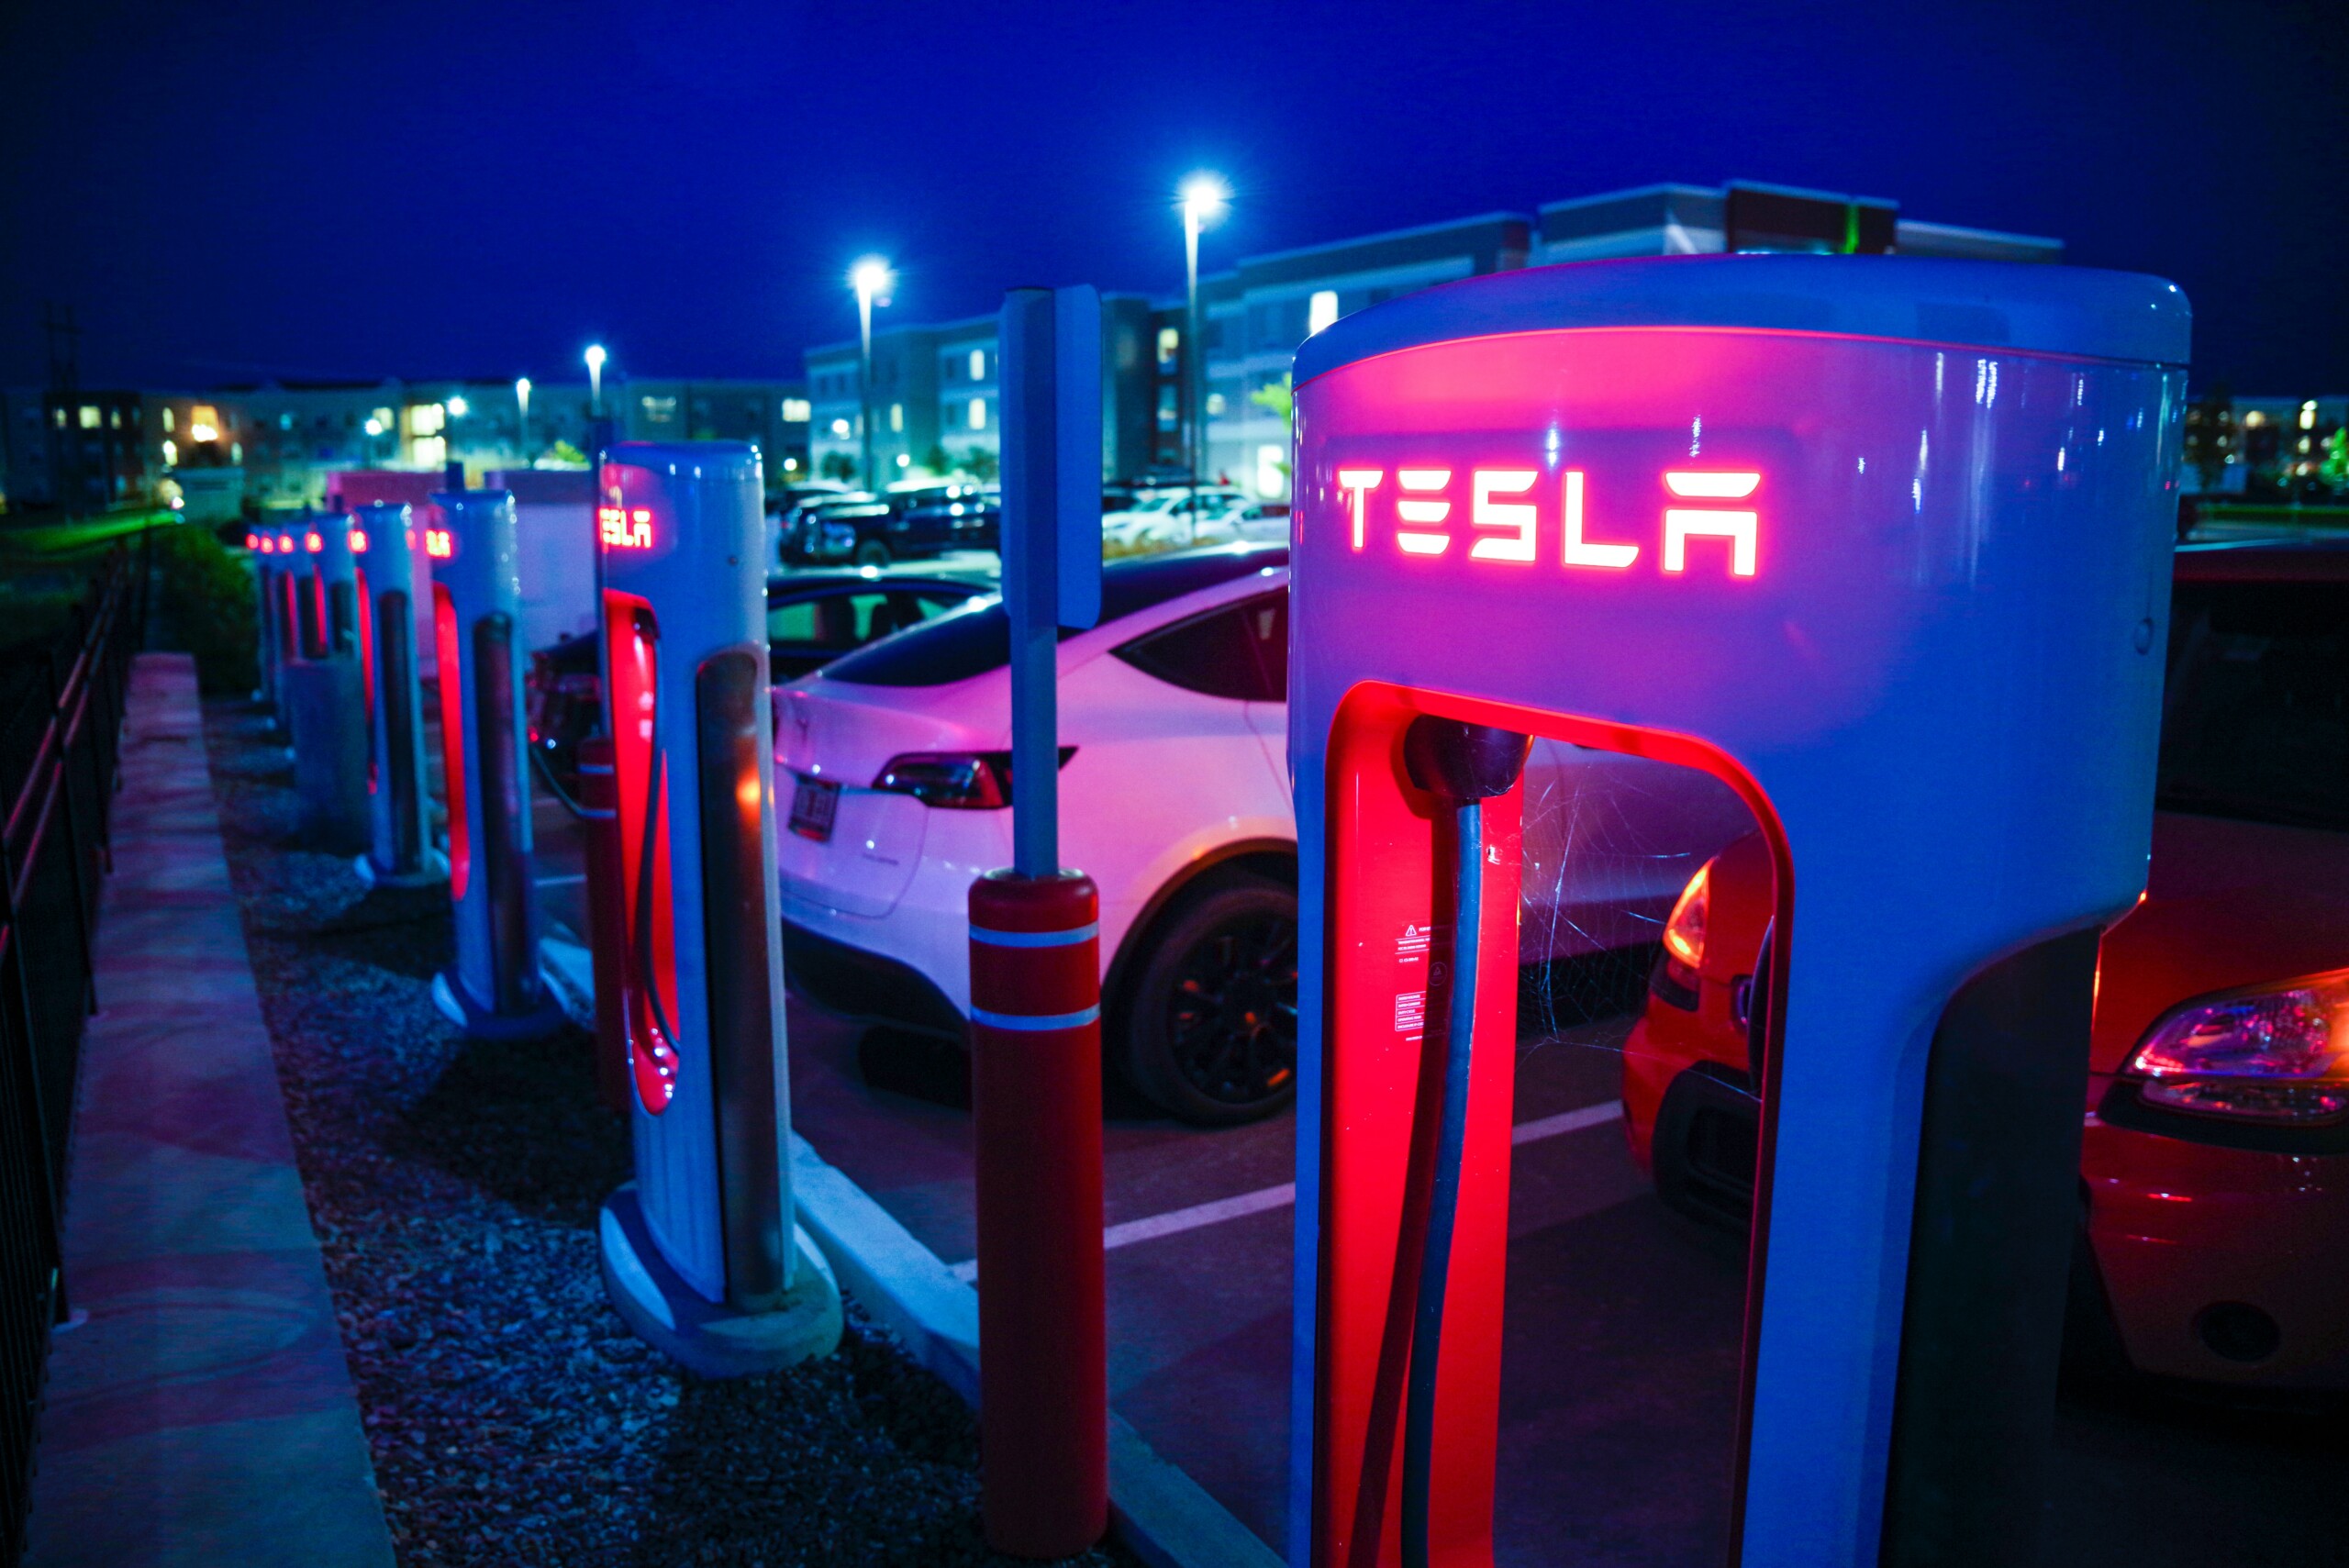 Tesla : les Superchargeurs bientôt ouverts aux autres constructeurs